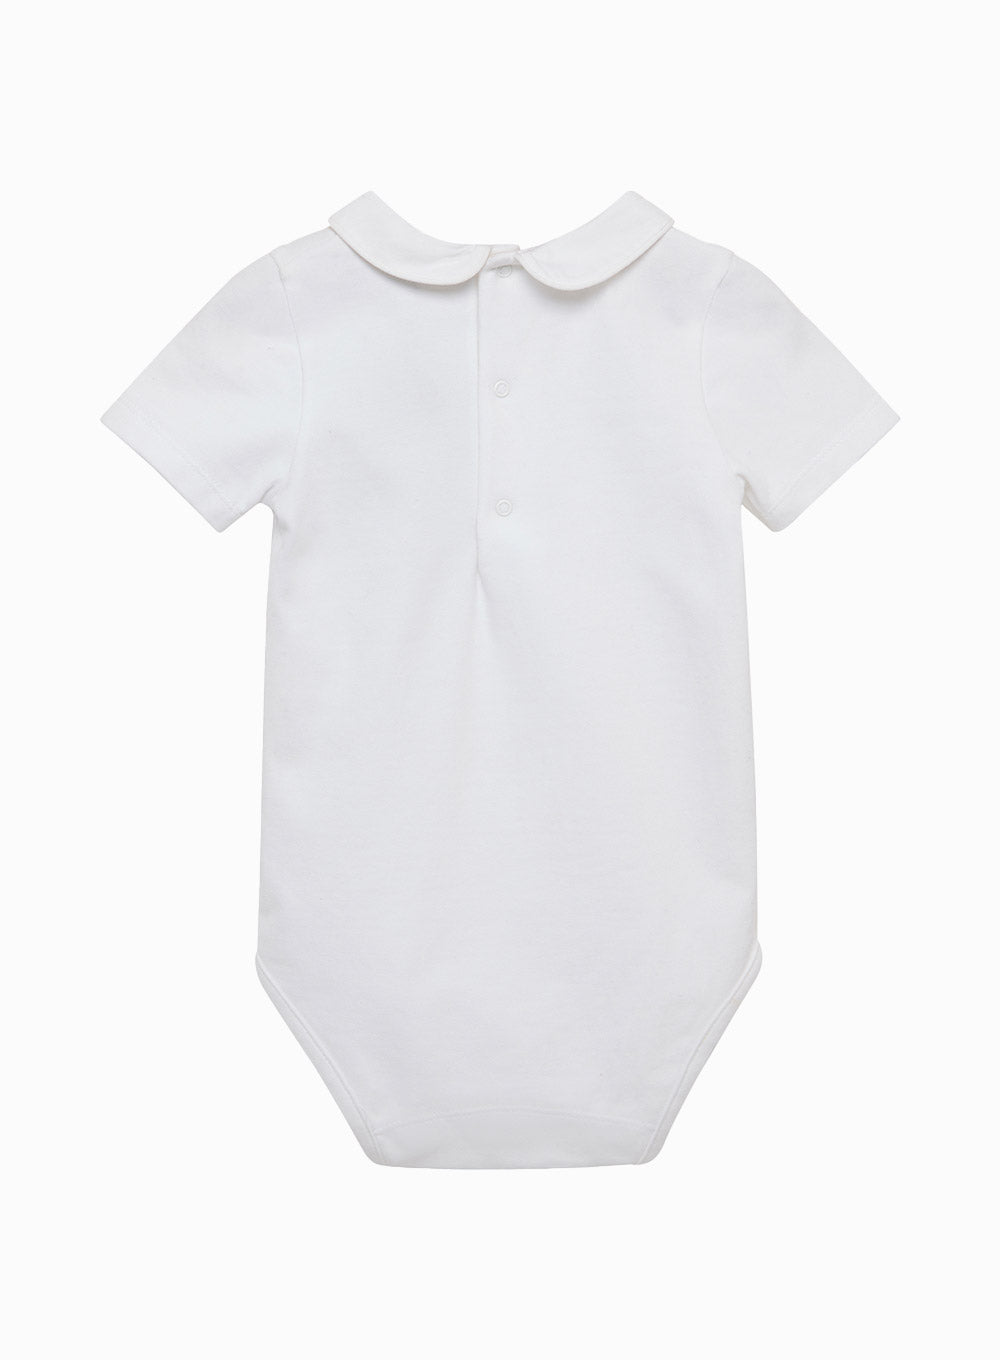 Little Short-Sleeved Milo Bodysuit in White/White